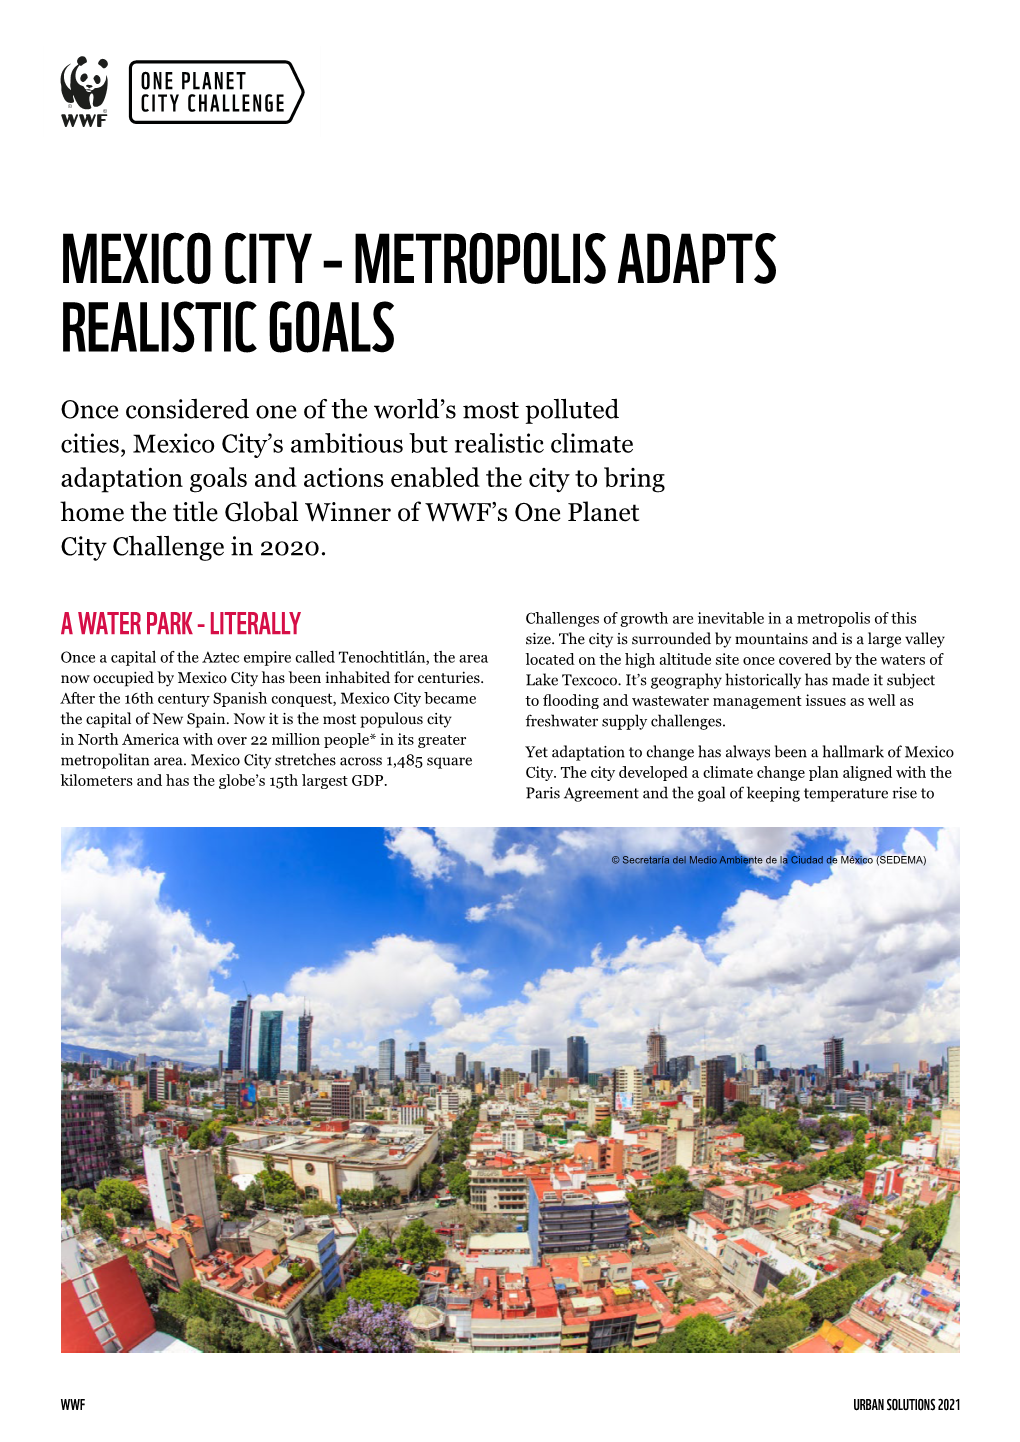 Mexico City – Metropolis Adapts Realistic Goals